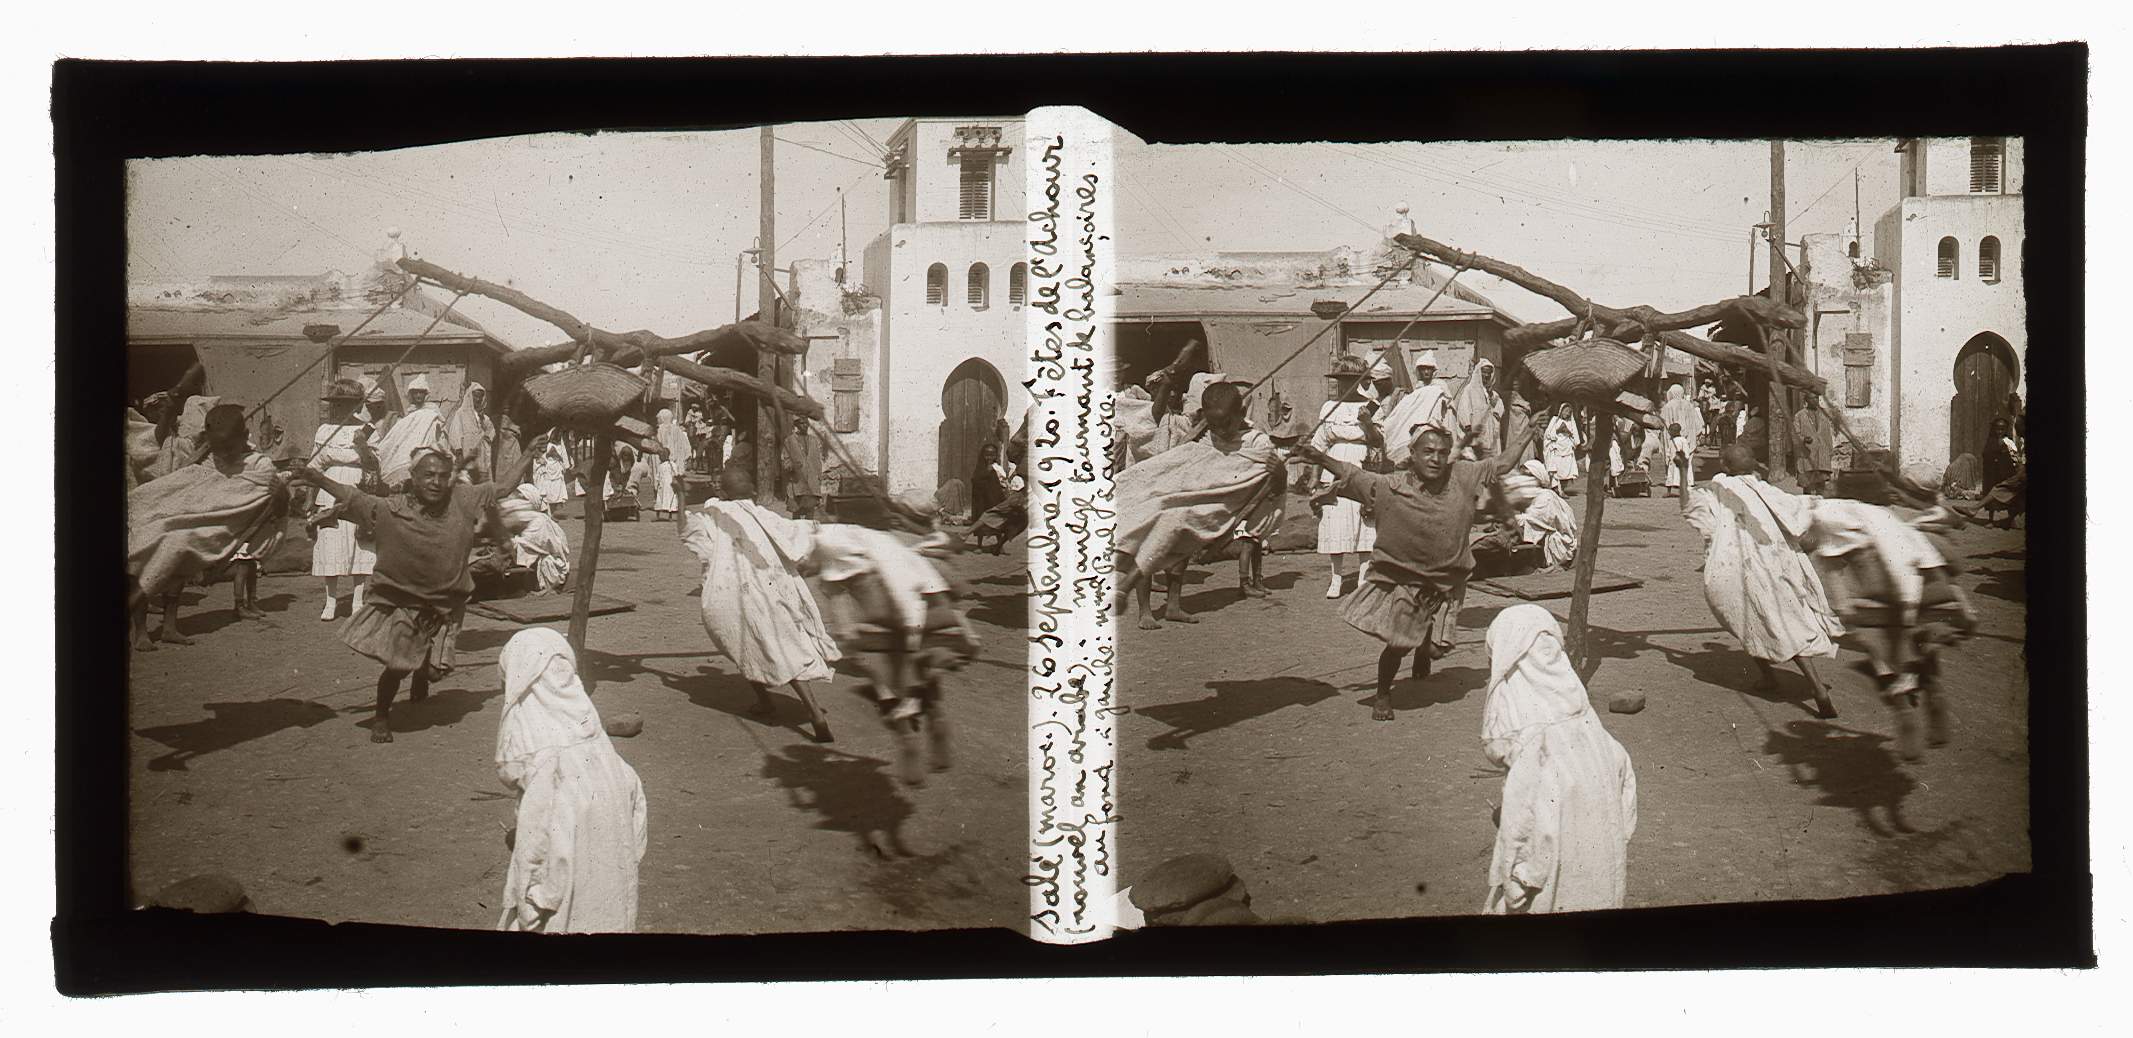 Paul Lancre, Salé, Maroc, manège tournant de balançoires | Arch. dép. Orne, 86 Fi 3/460